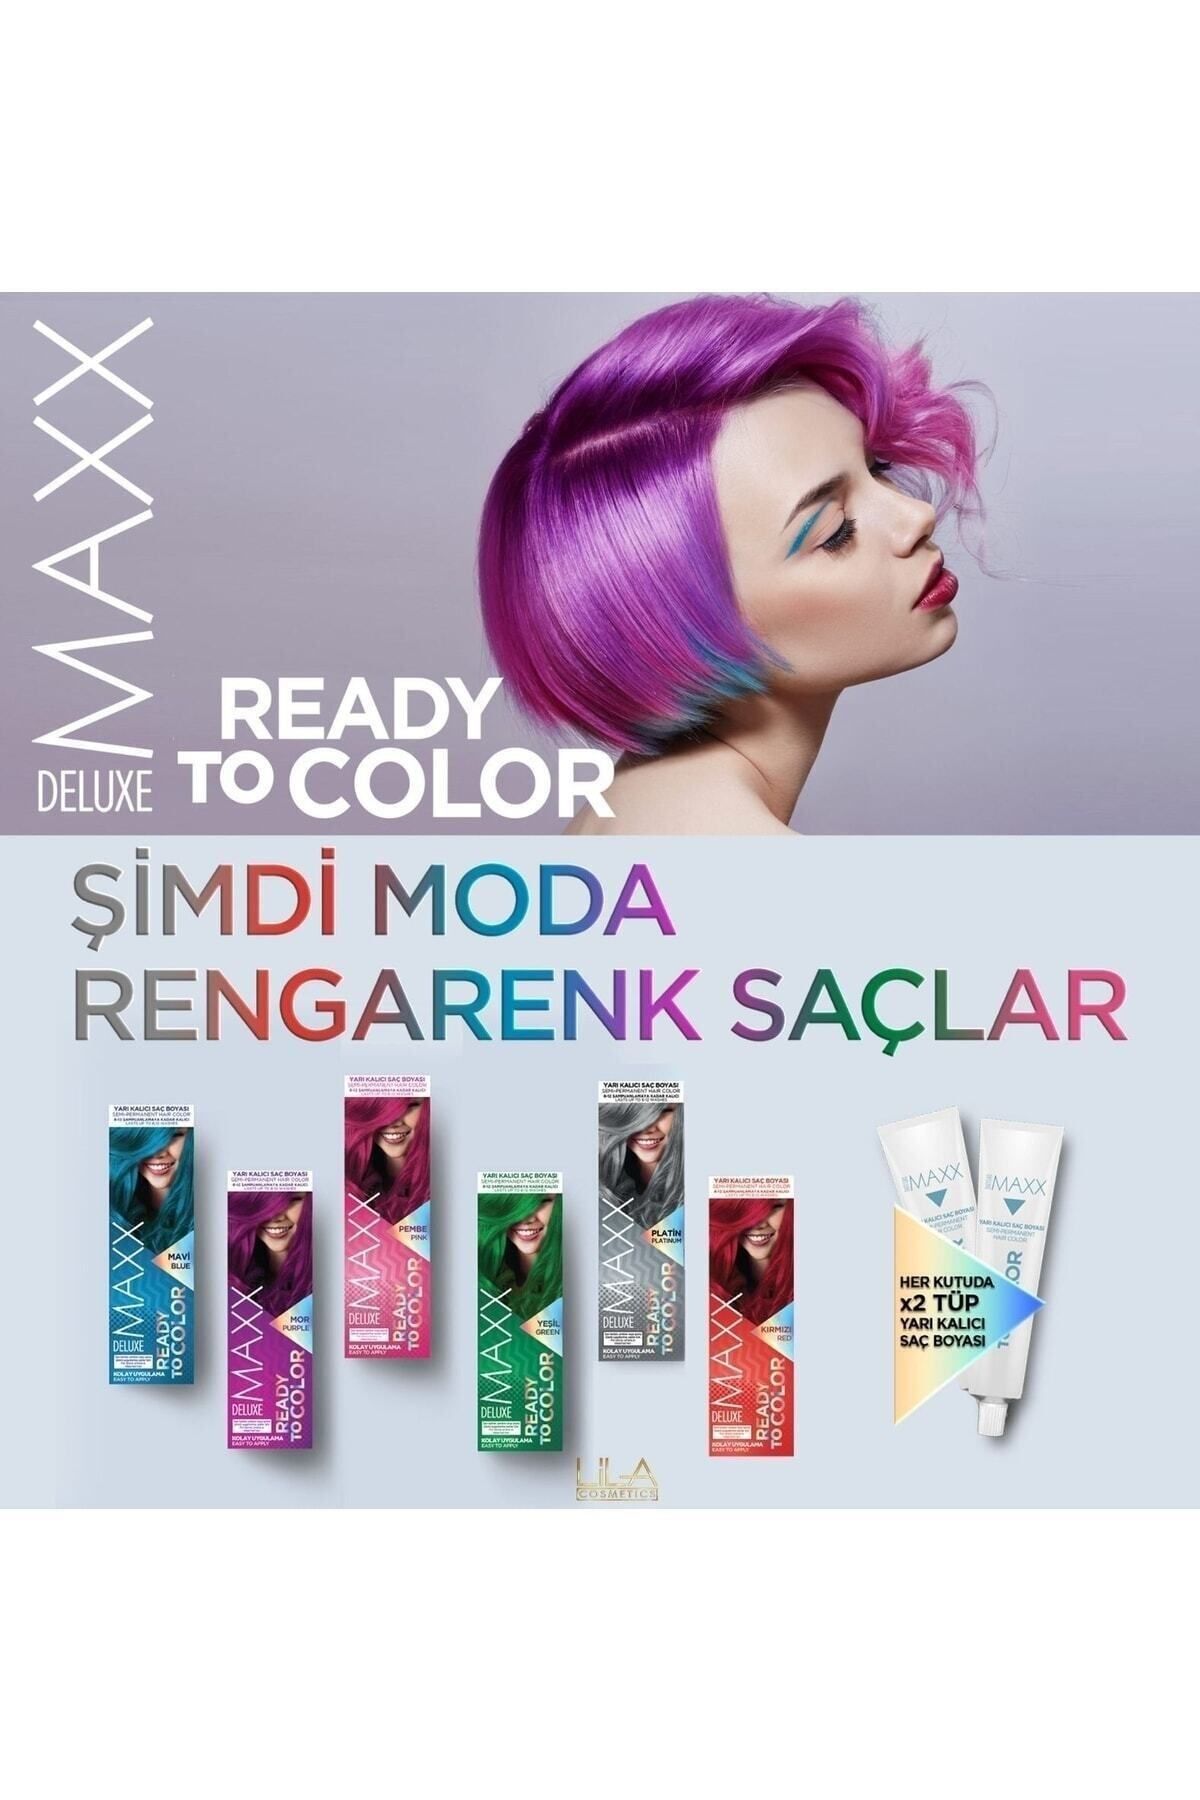 MAXX DELUXE Deluxe Max Yarı Kalıcı Saç Boyası Mor Purple Ready To Color